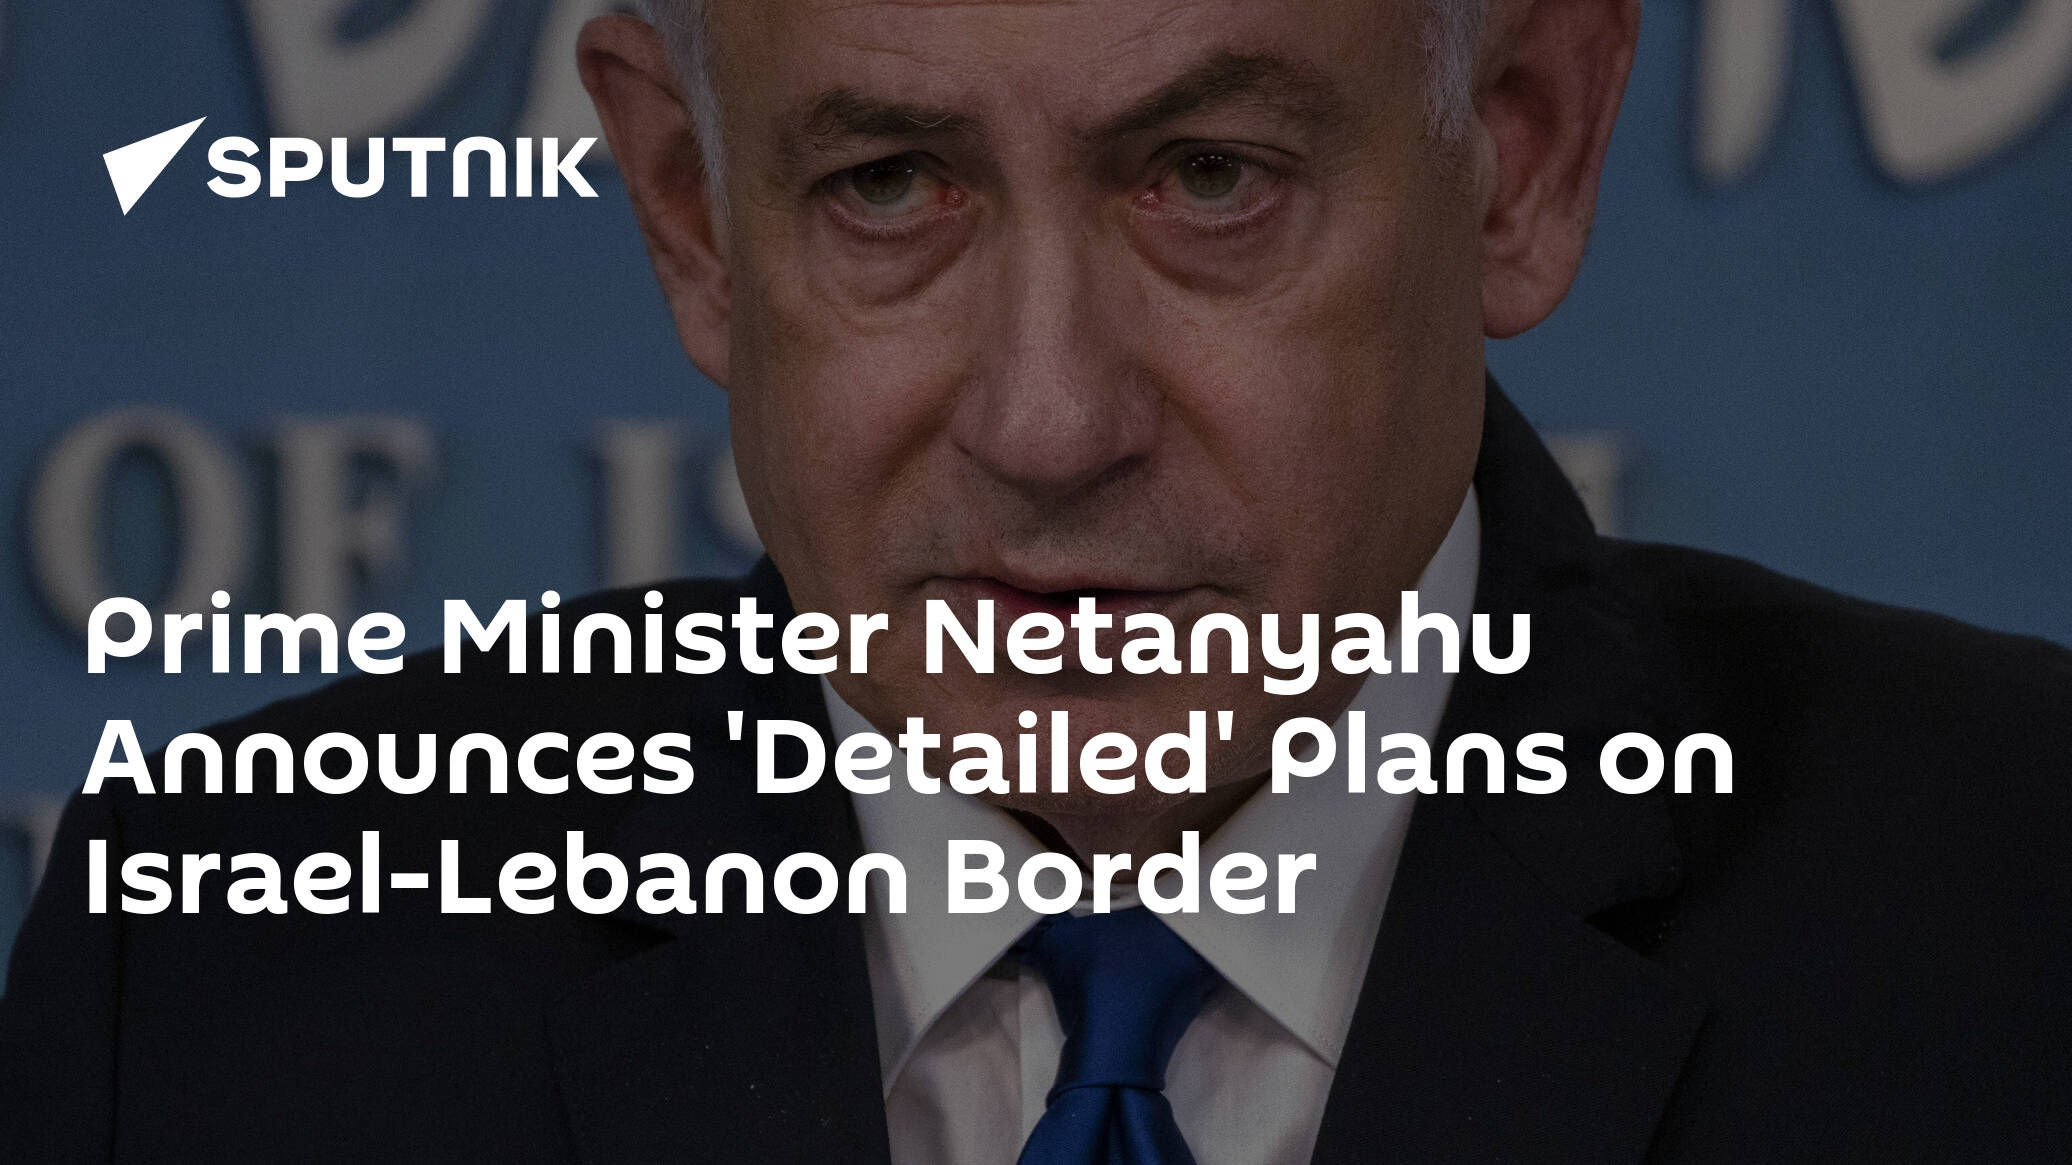 Prime Minister Netanyahu Announces 'Detailed' Plans on Israel-Lebanon Border